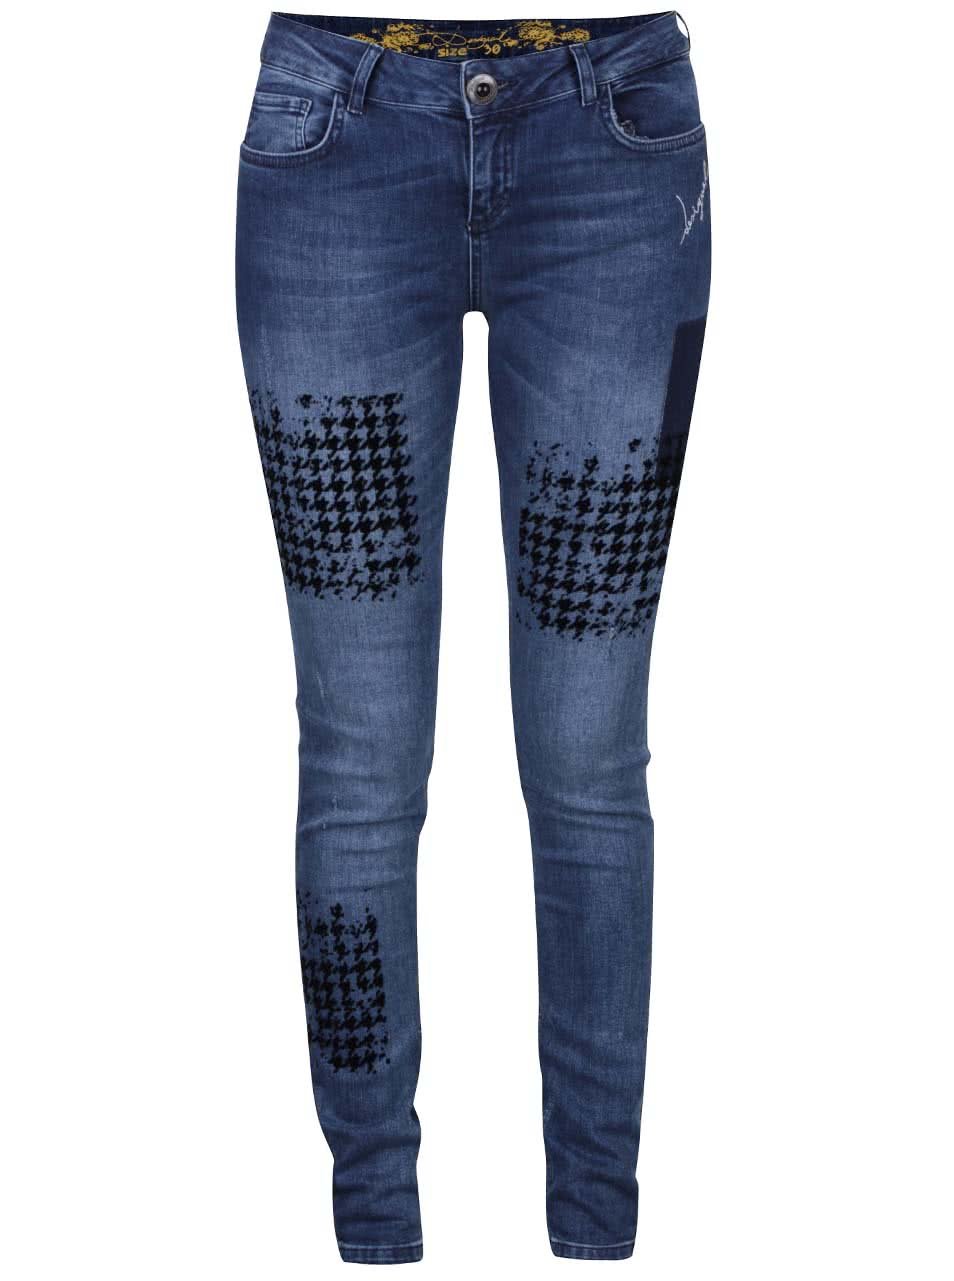 Tmavě modré džíny se vzorem Desigual Dina